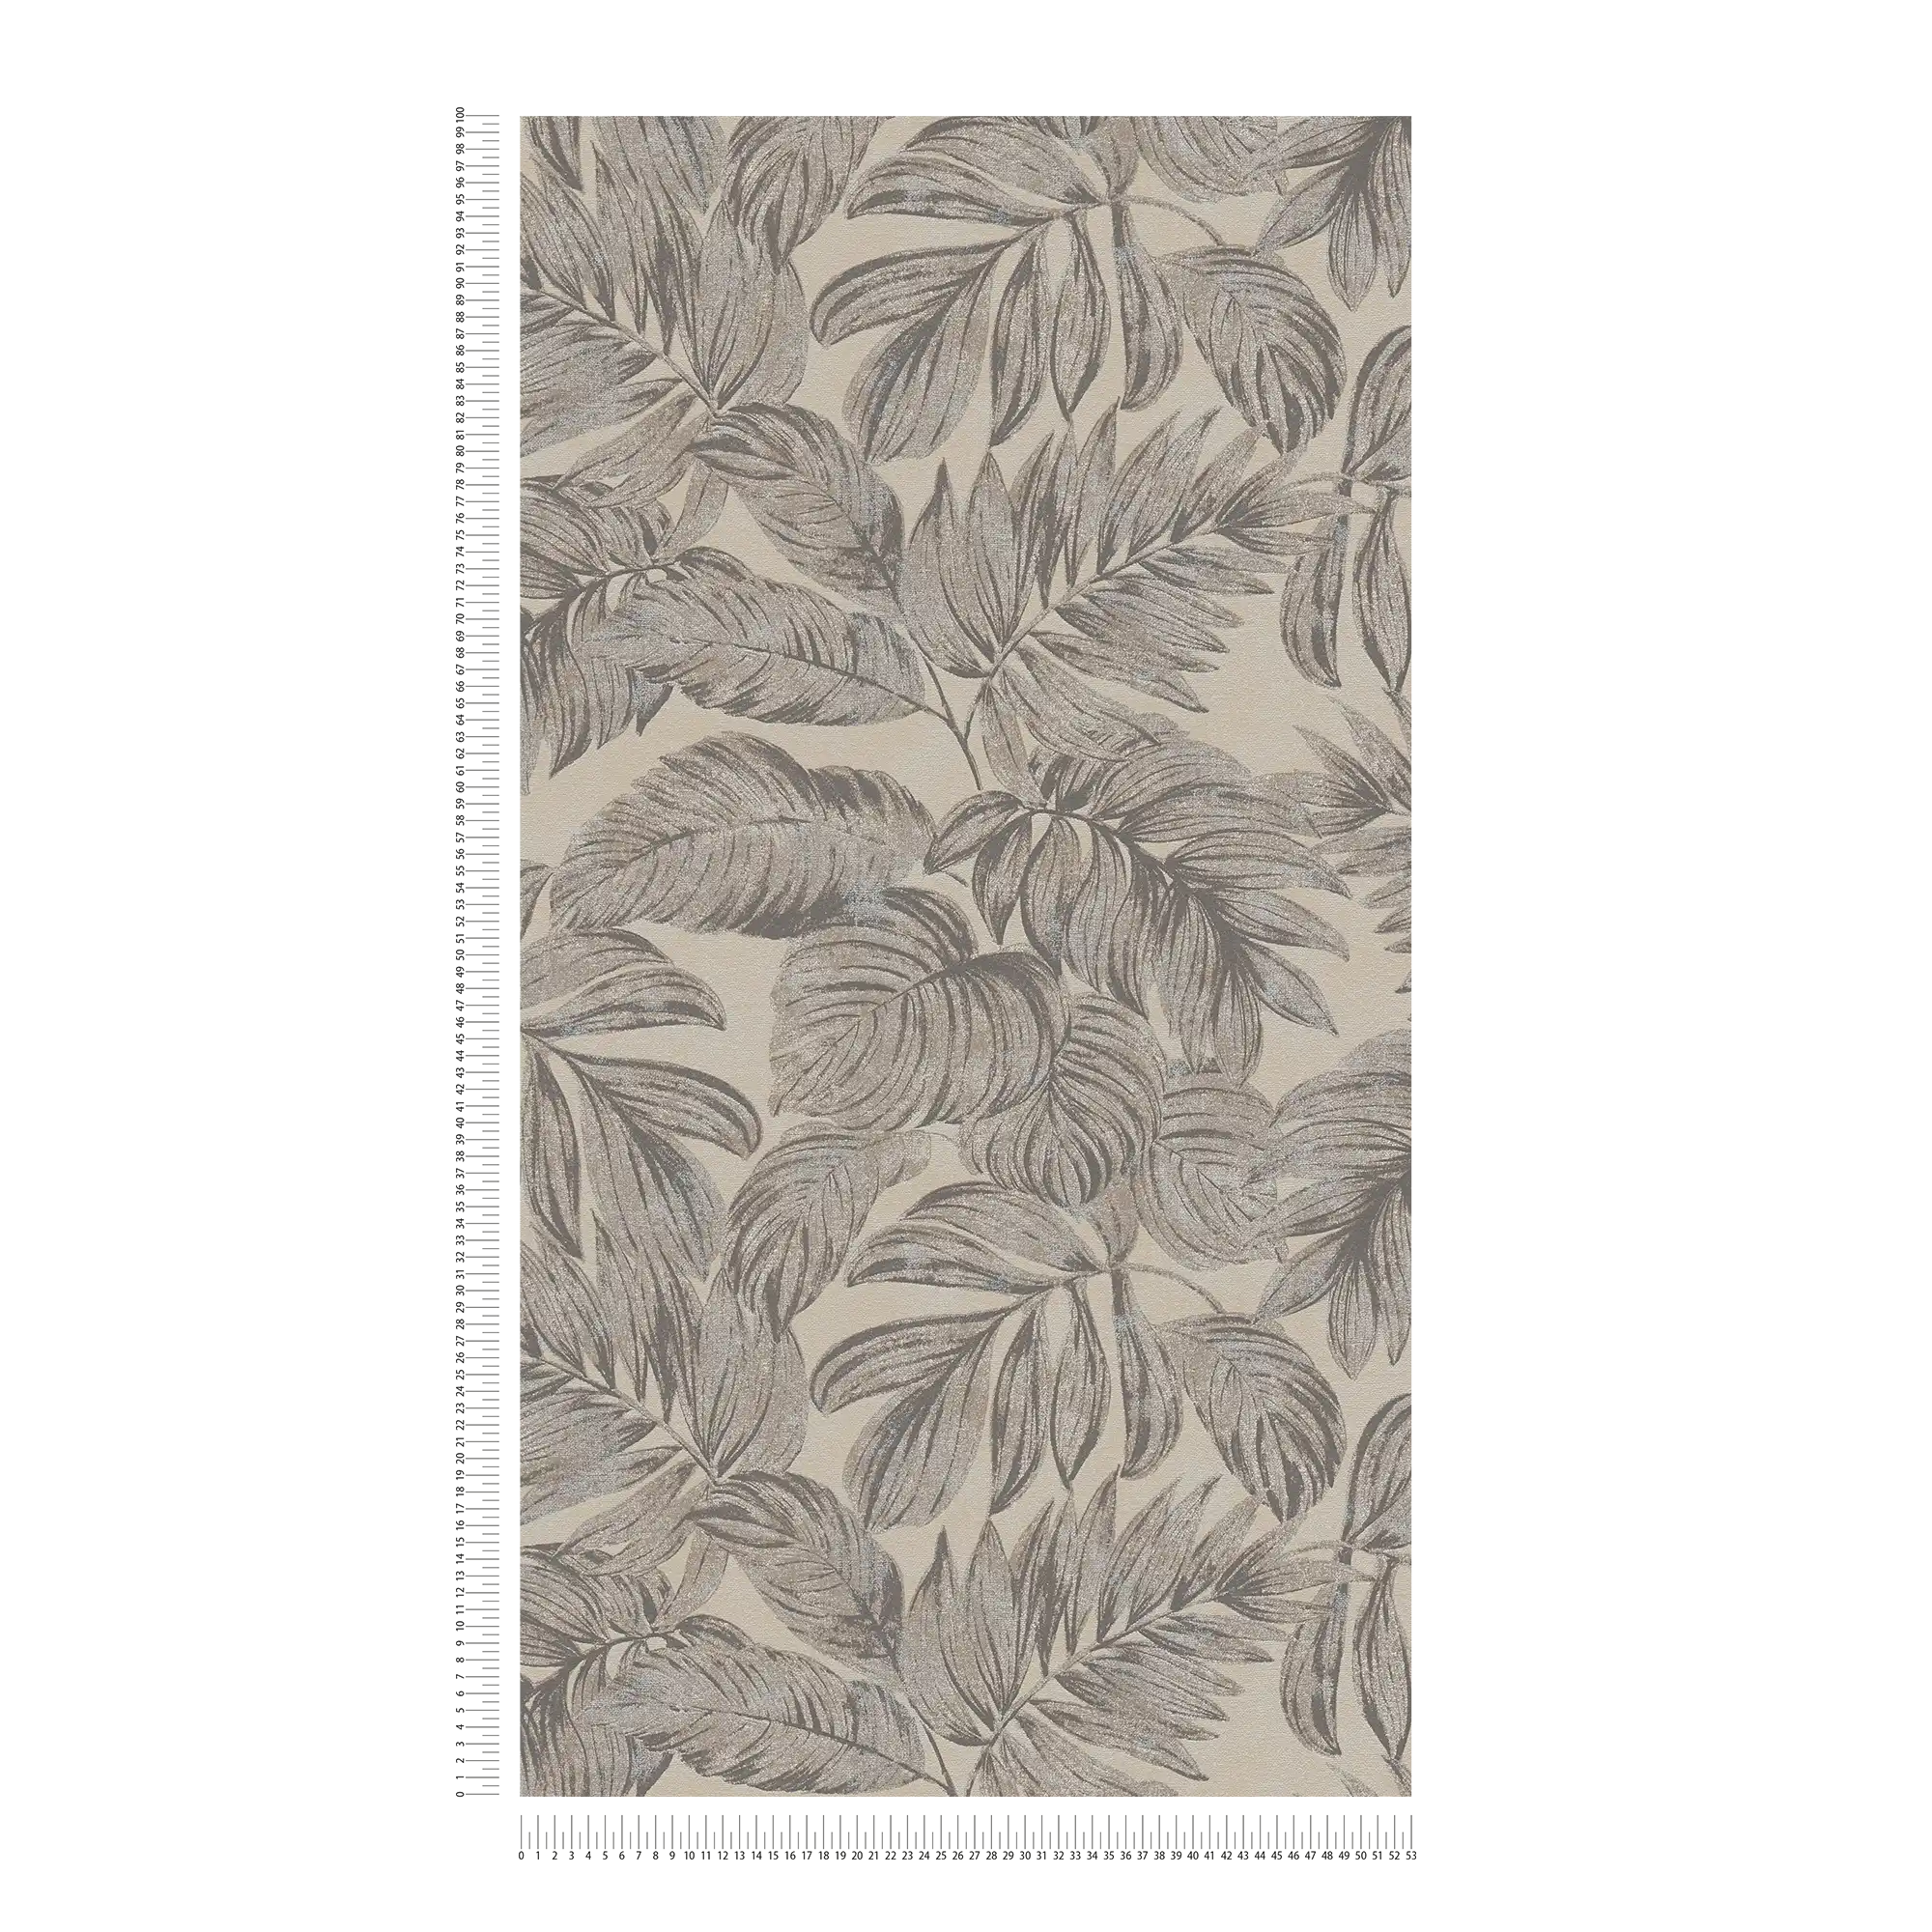             Papel pintado no tejido con motivo de hojas de selva - marrón, gris, beige
        